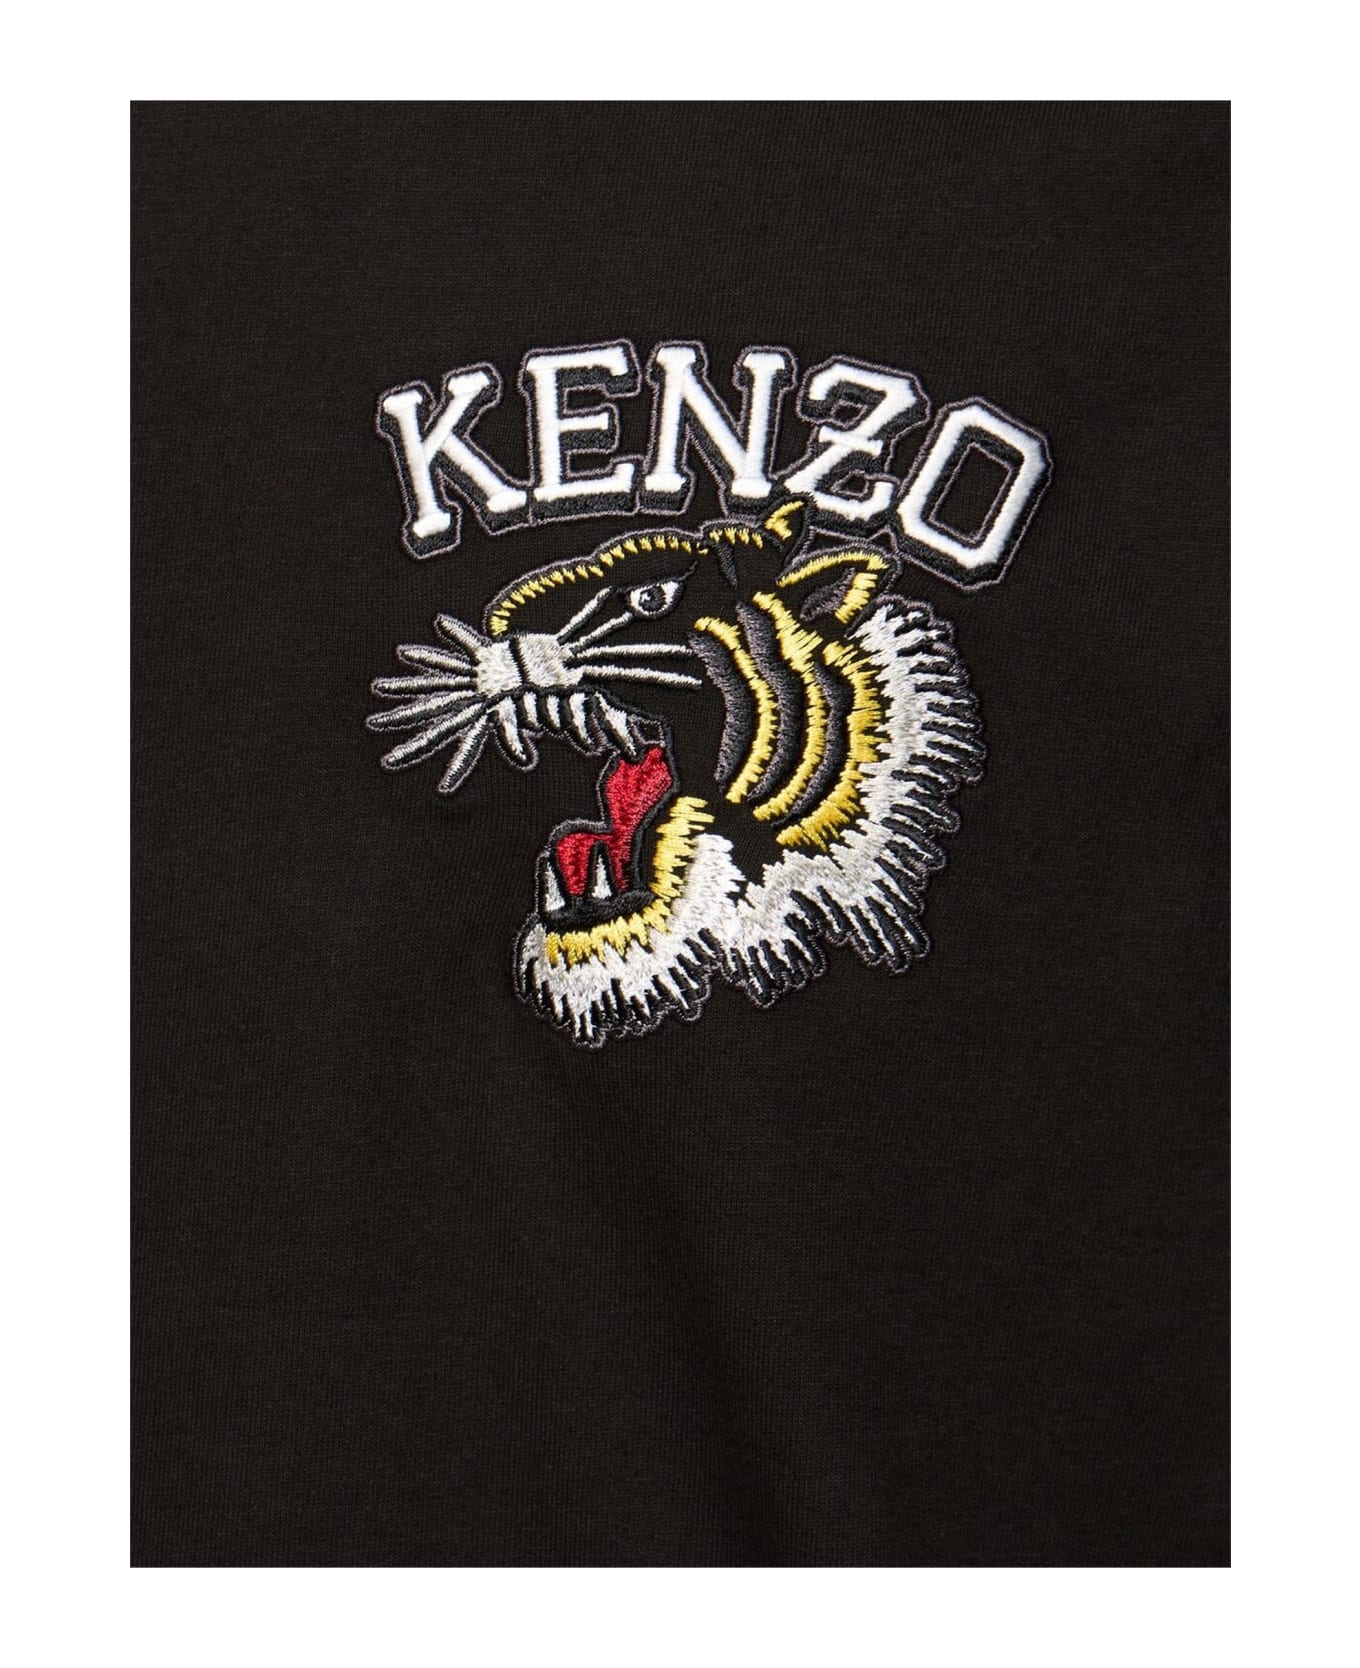 Kenzo T-shirts And Polos Black - Black